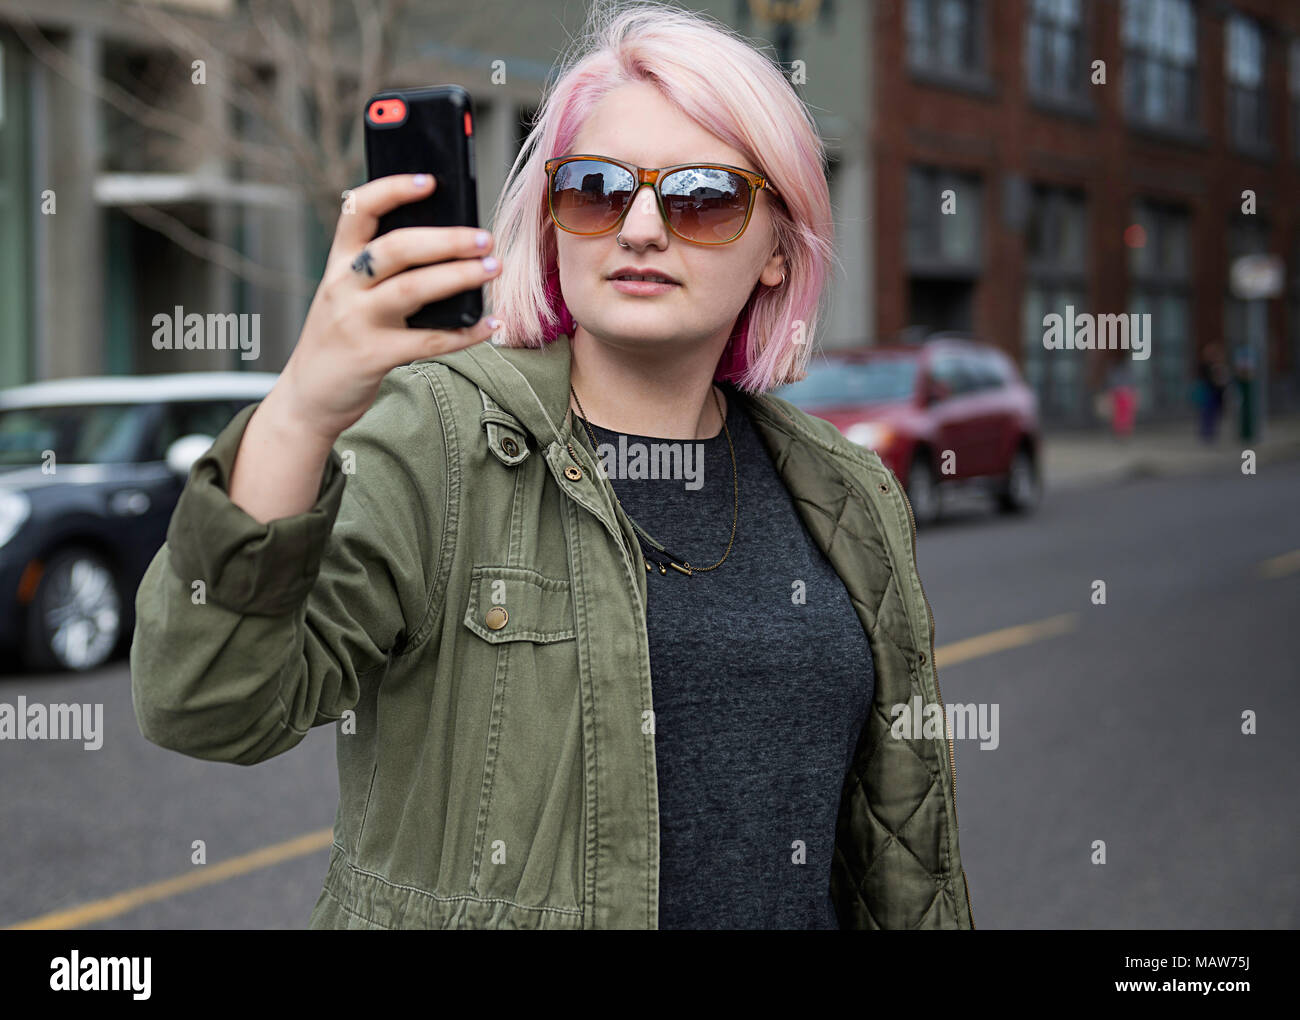 Une jeune femme aux cheveux roses, debout dans la rue, à Portland en utilisant son téléphone portable pour prendre une photo. Banque D'Images